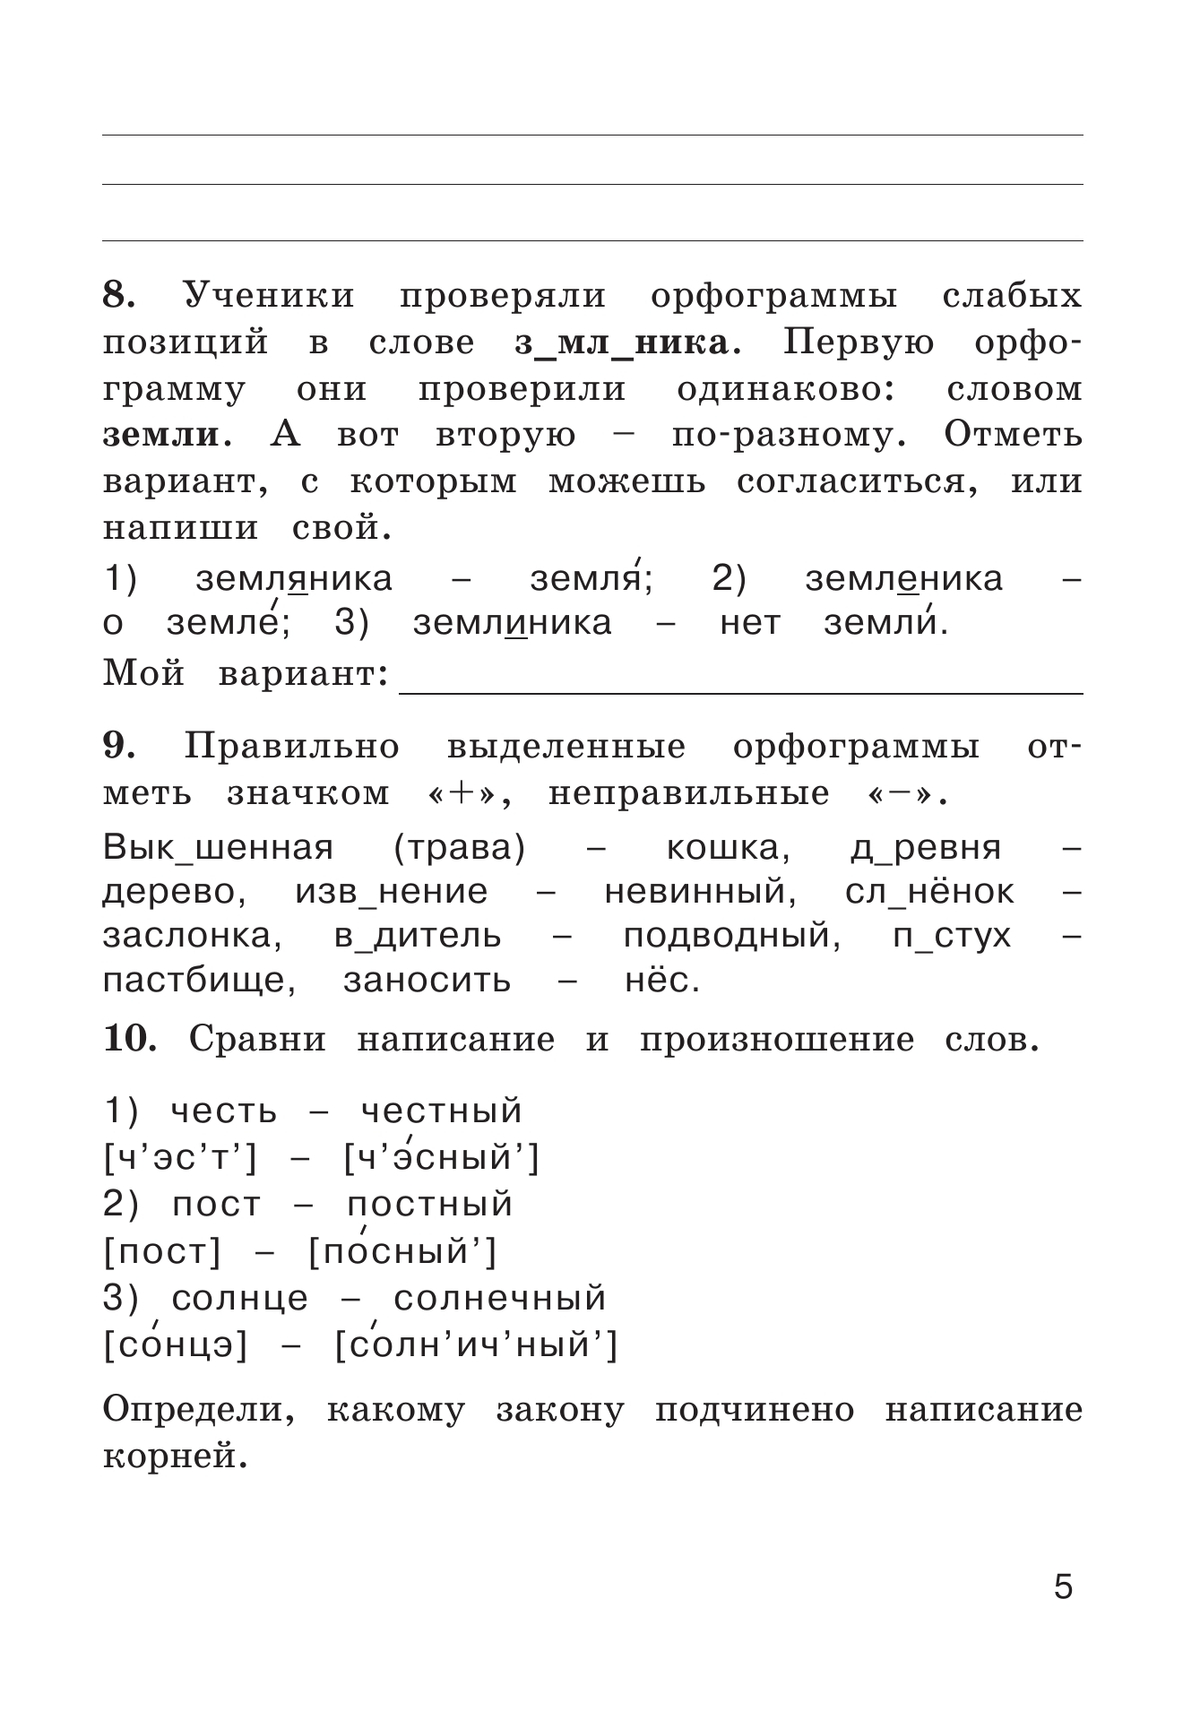 Рабочая тетрадь по русскому языку. 3 класс. В 2 частях. Часть 1 6